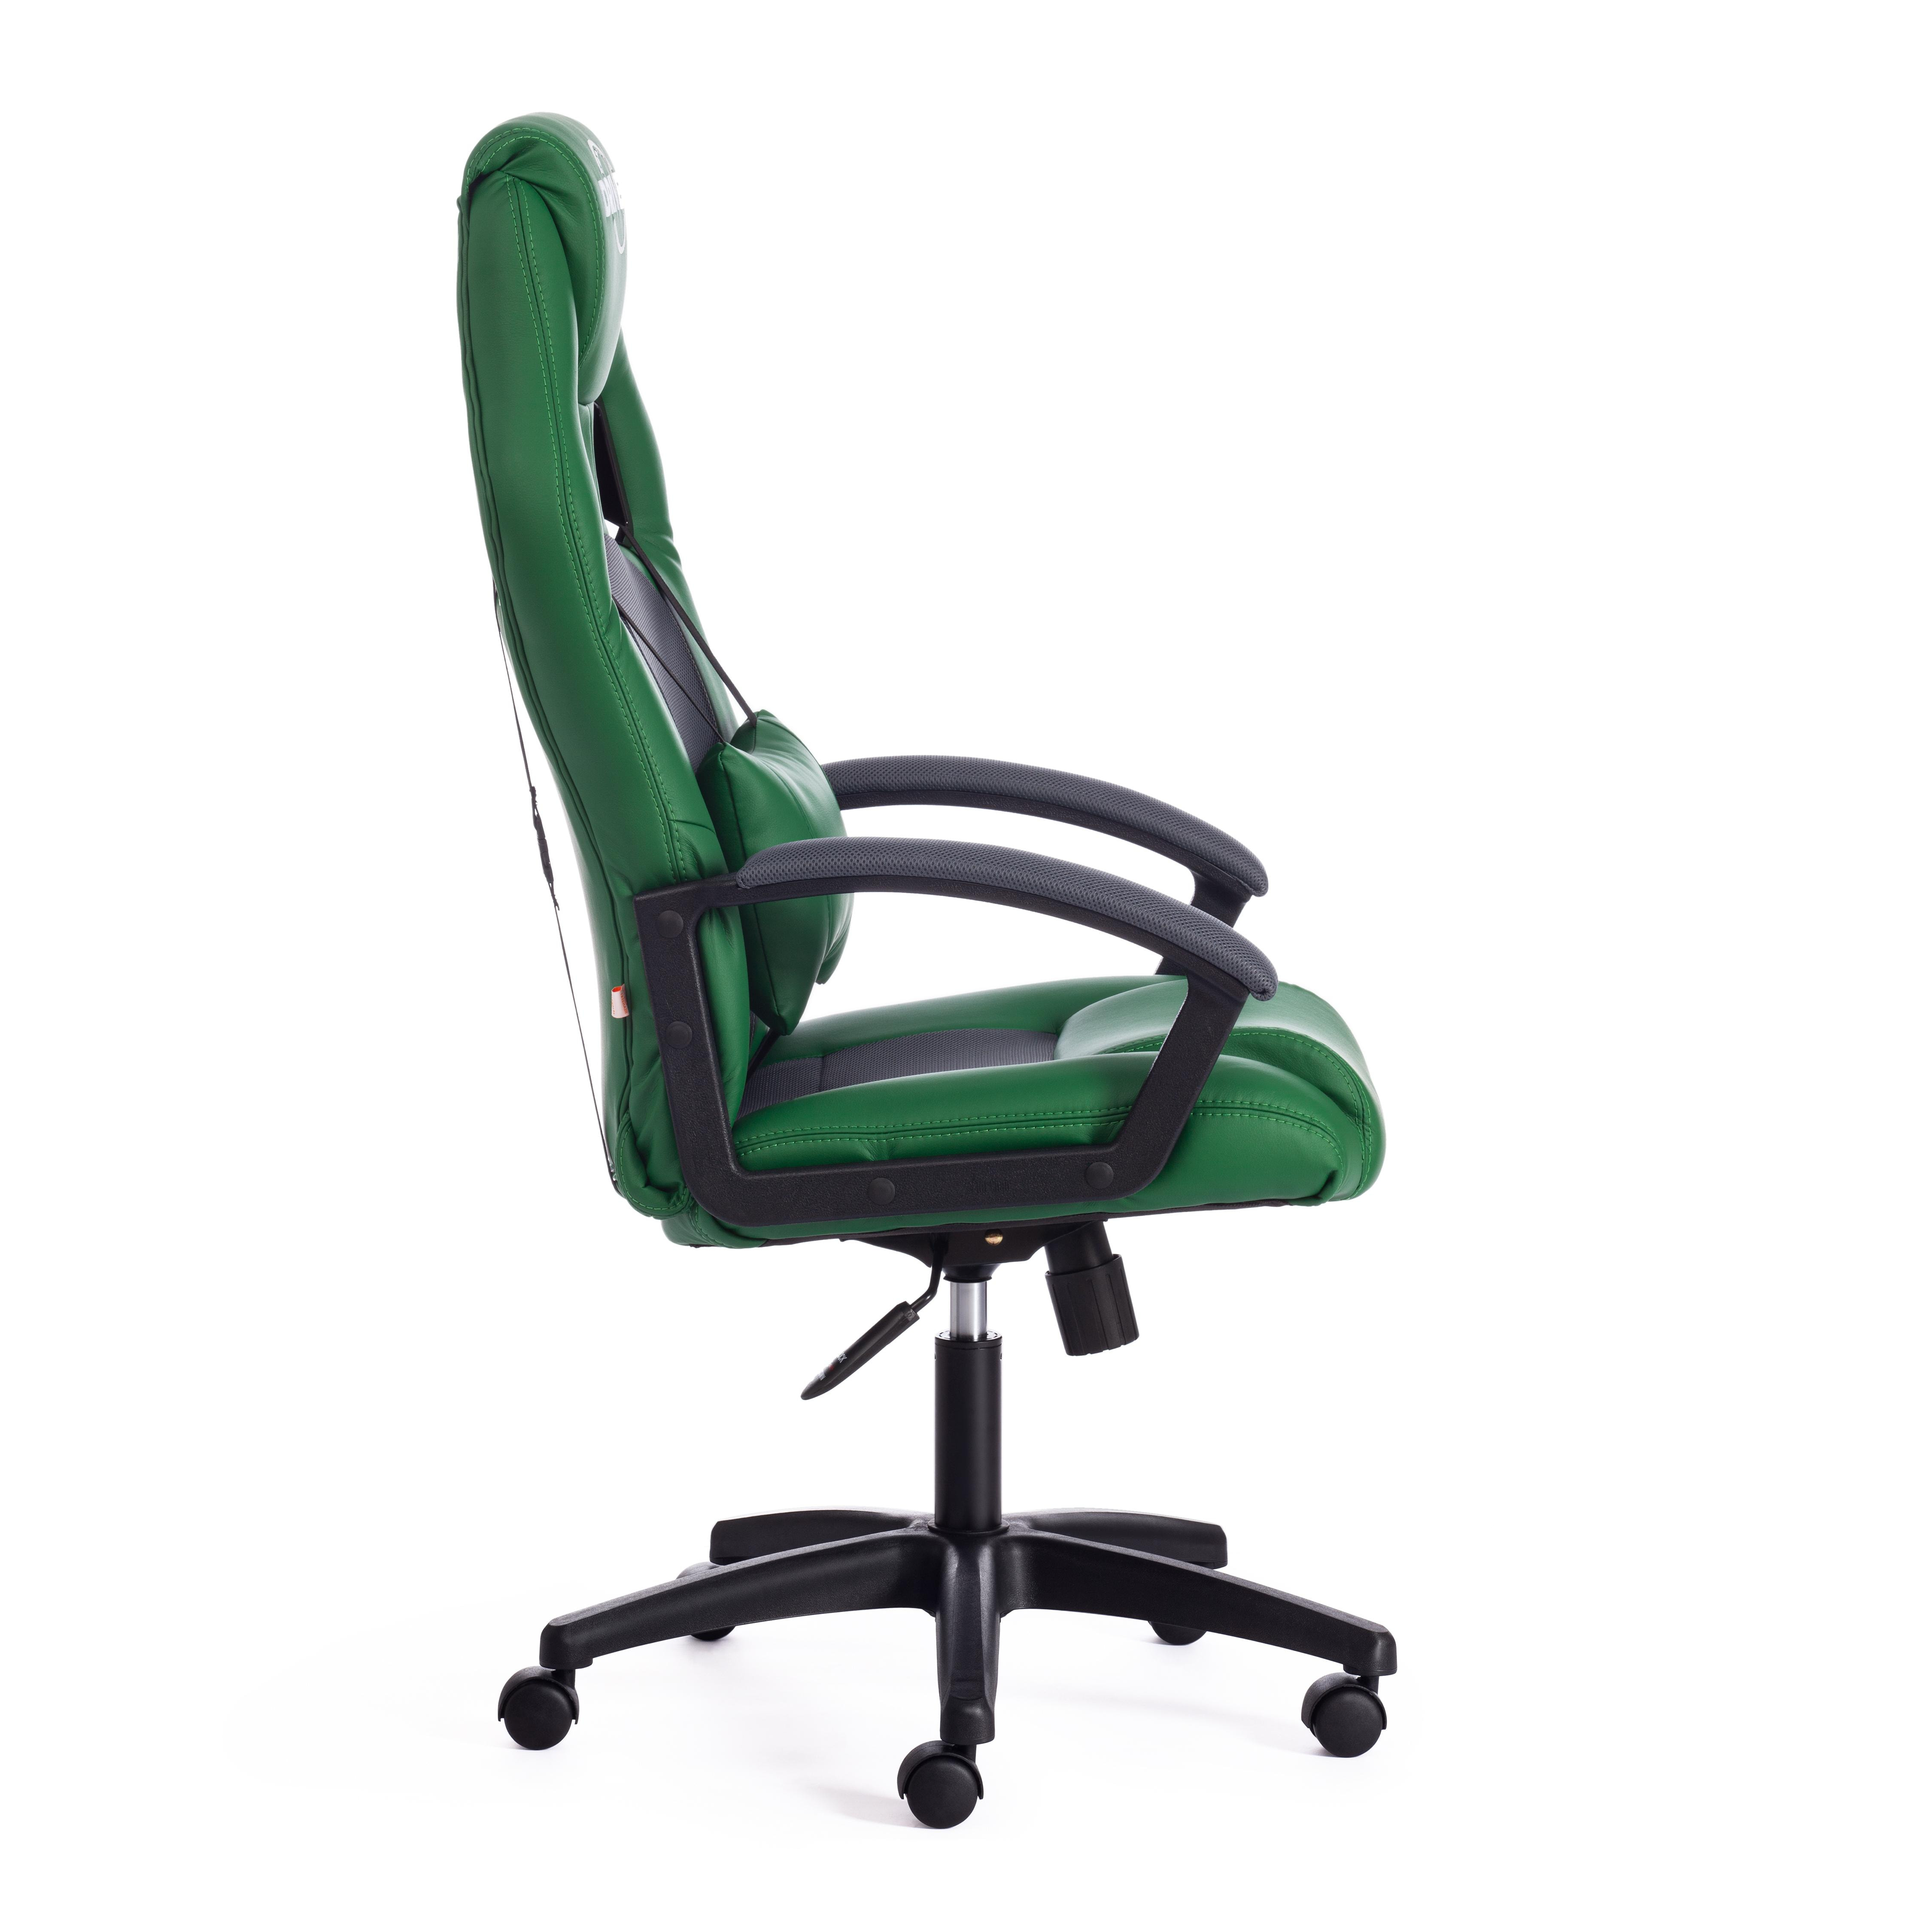 Кресло DRIVER кож/зам/ткань, зеленый/серый, 36-001/12